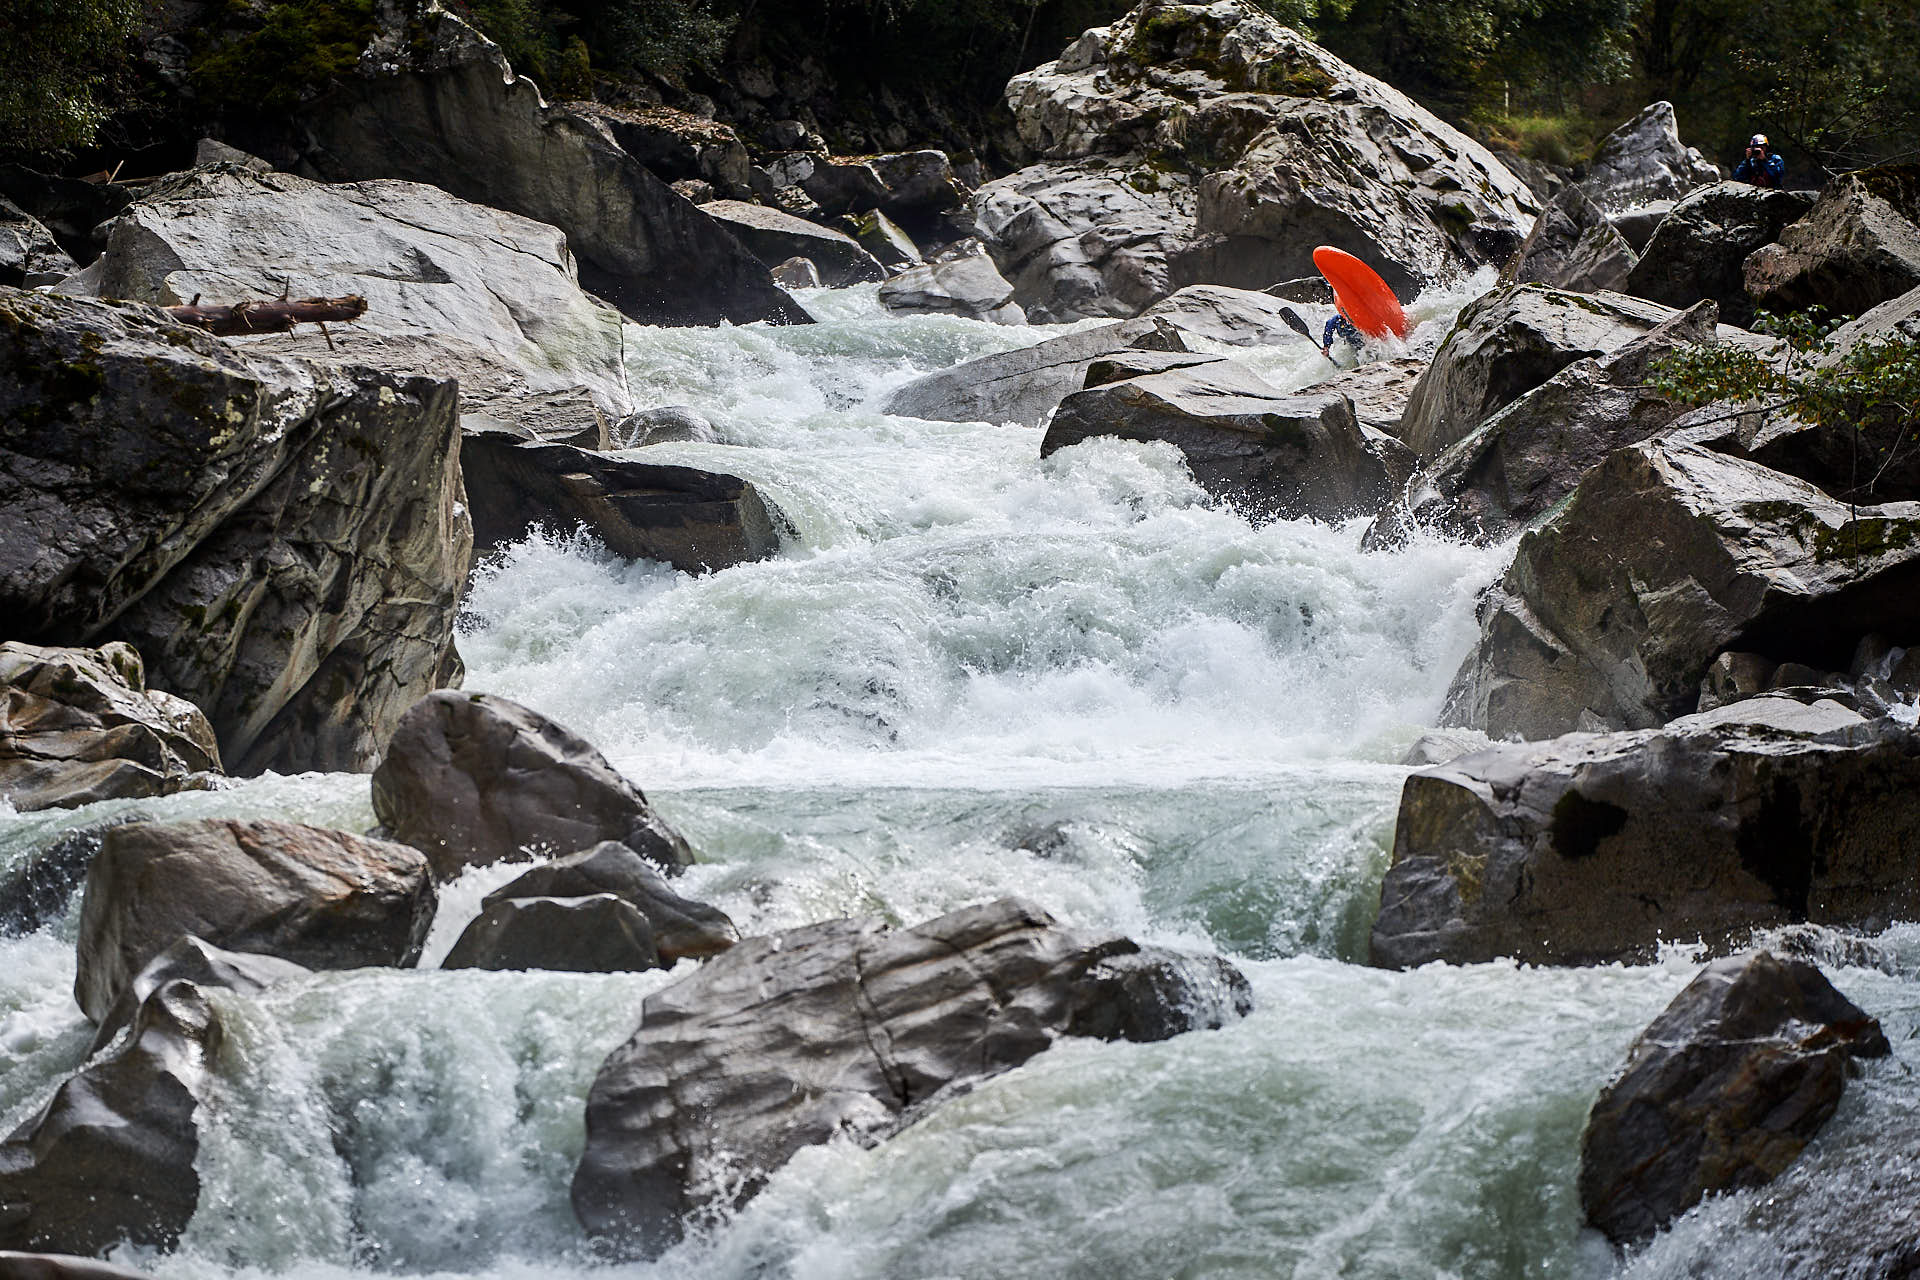 Wildwasser/Kayak Fotoshooting mit Bren Orton im Oetztal, Österreich